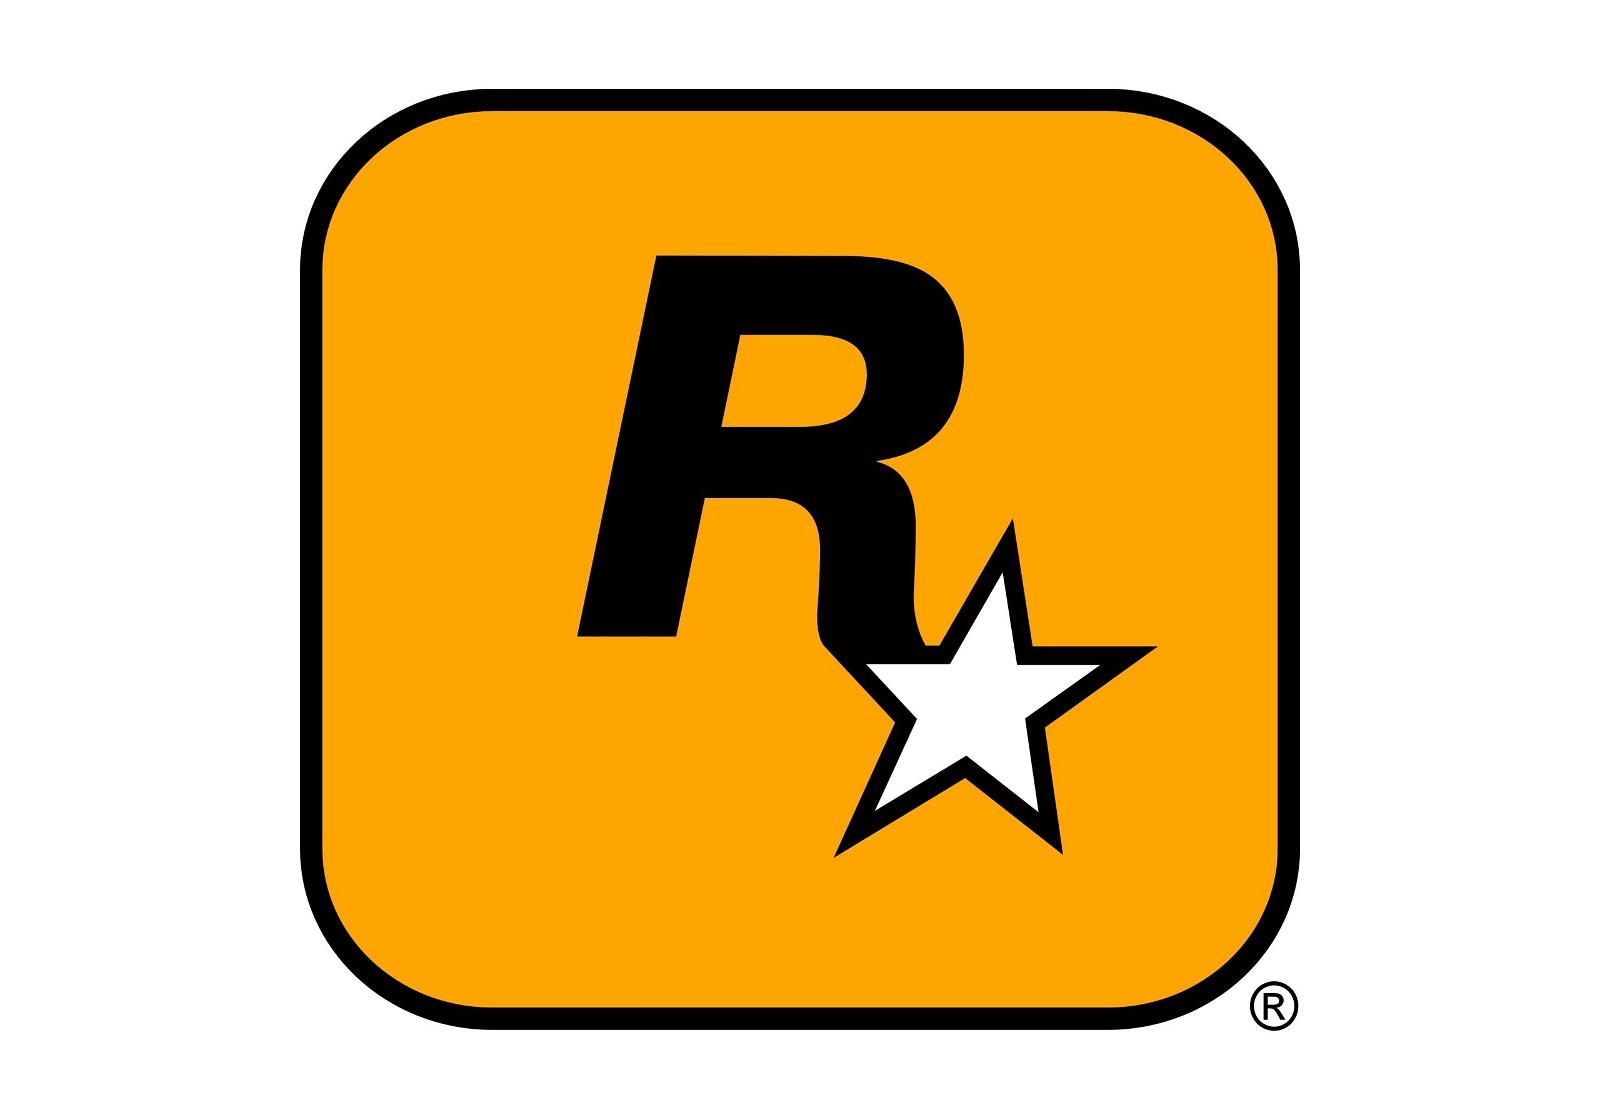 É oficial! Rockstar vai revelar GTA VI no início de dezembro - 4gnews